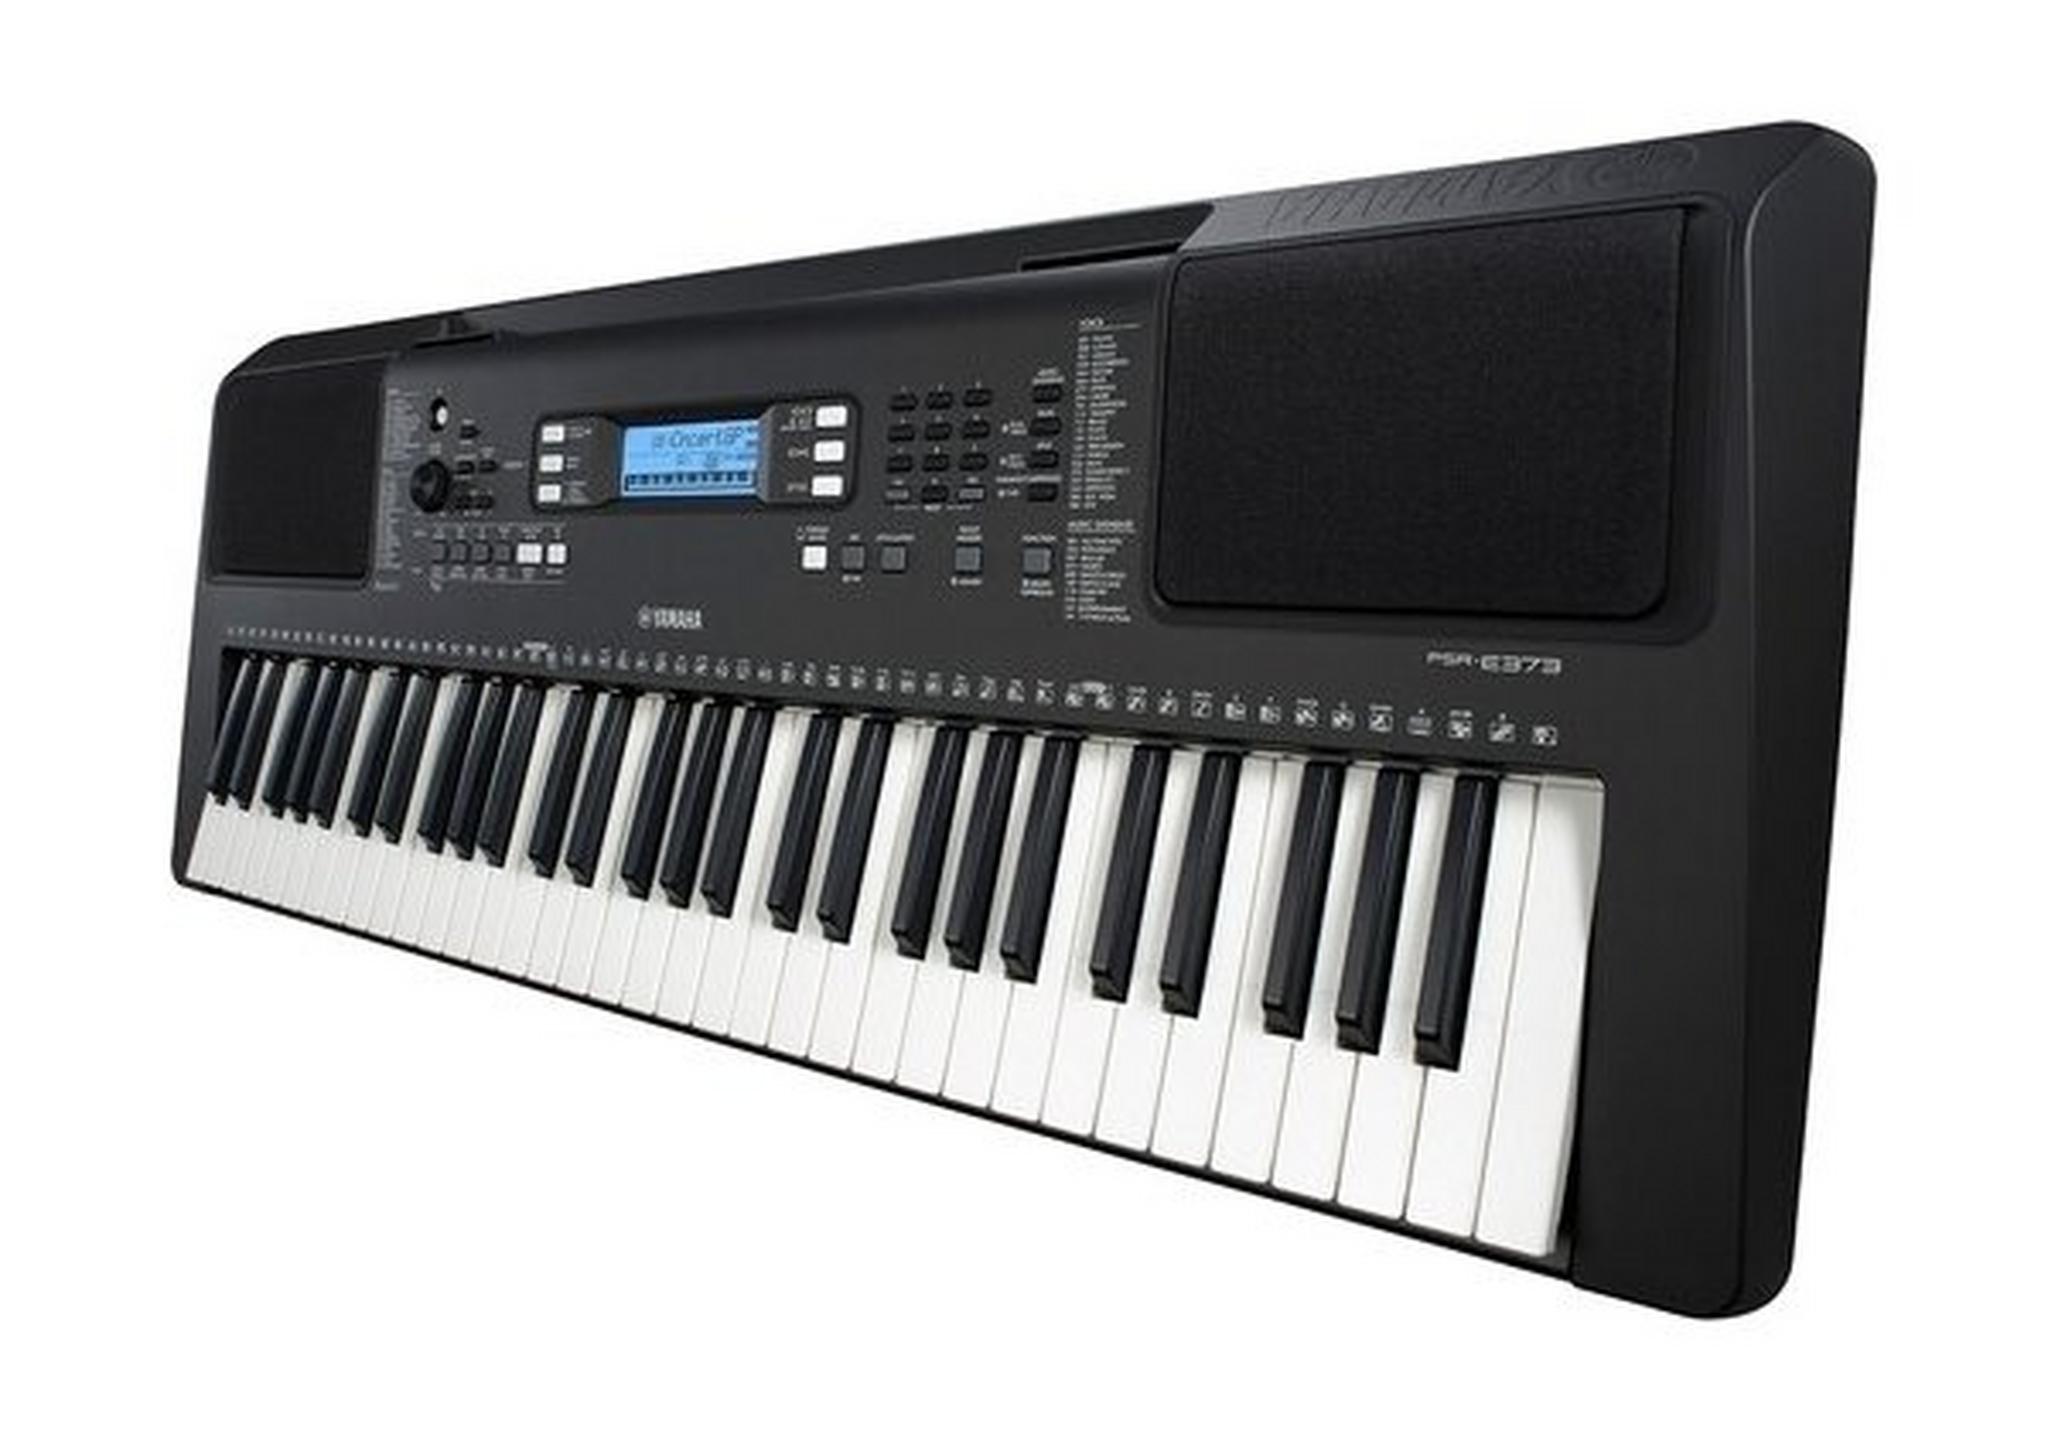 لوحة مفاتيح موسيقية ياماها محمولة 61 مفتاحًا حساس للمس - (PSR-E373)